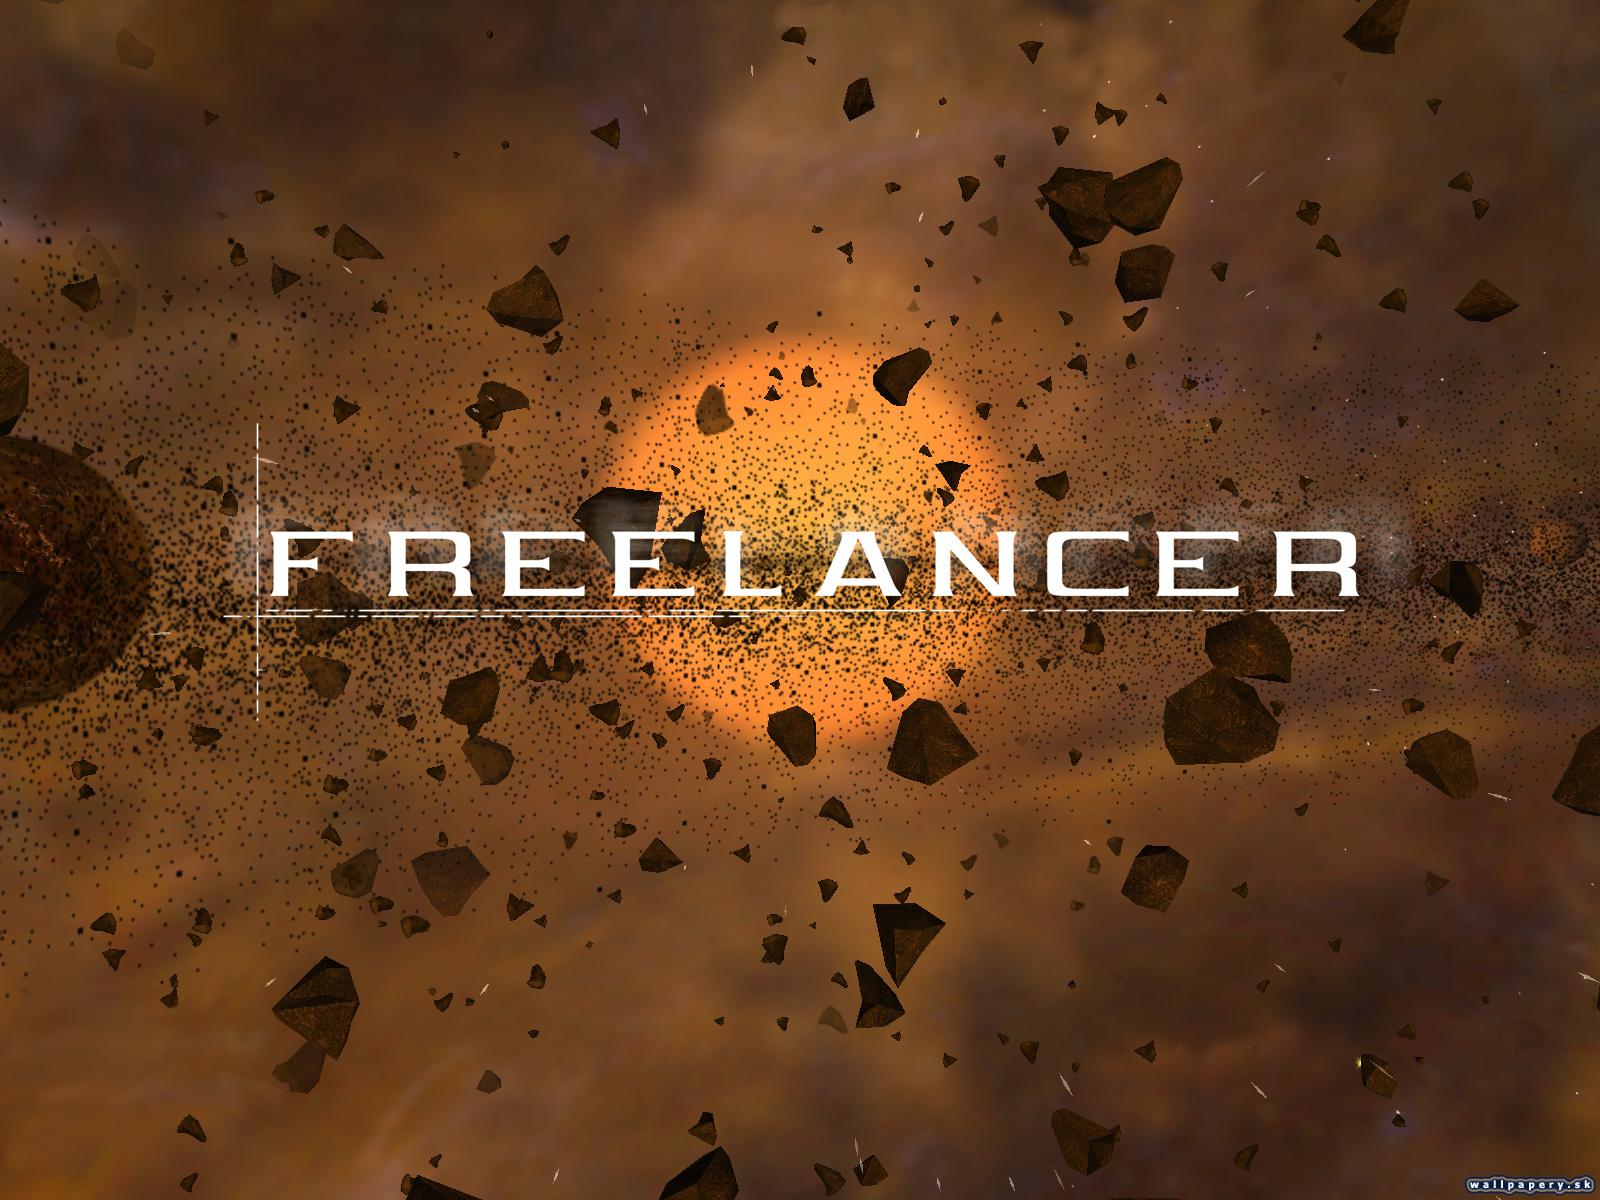 Freelancer - wallpaper 6